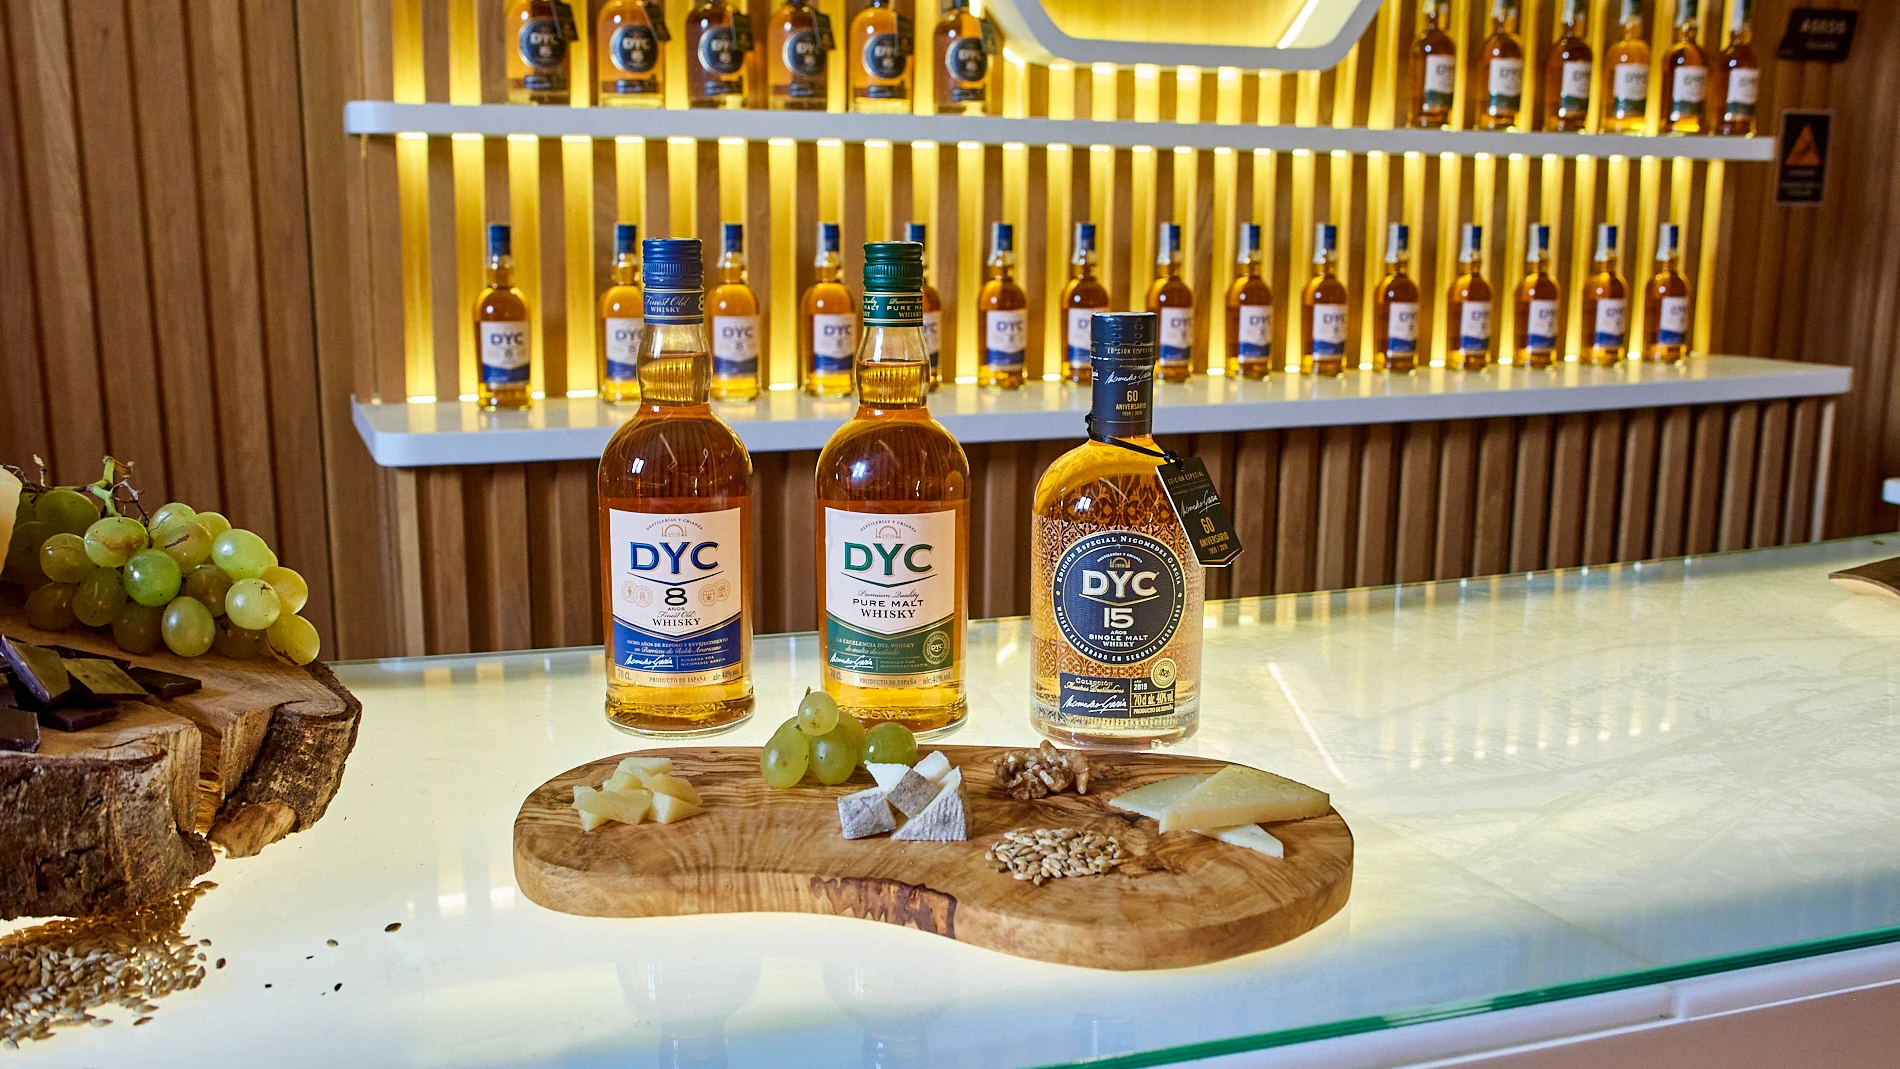 Los whiskies DYC siguen logrando numerosos reconocimientos internacionales